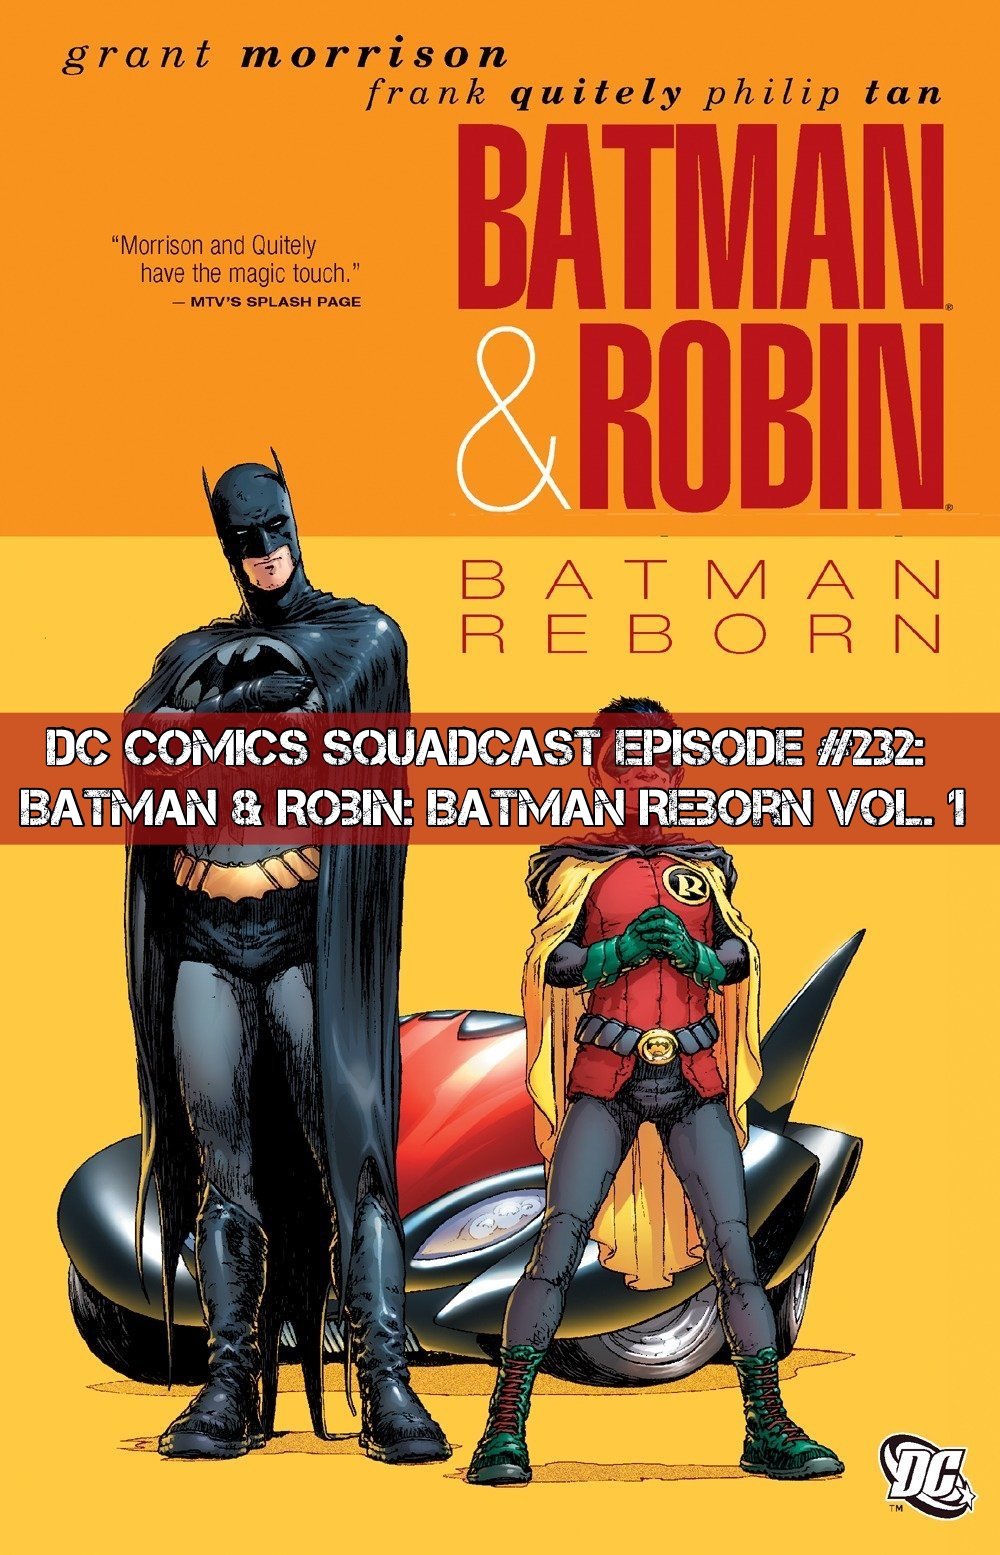 232: Batman & Robin: Batman Reborn Vol. 1 — Squadcast Media